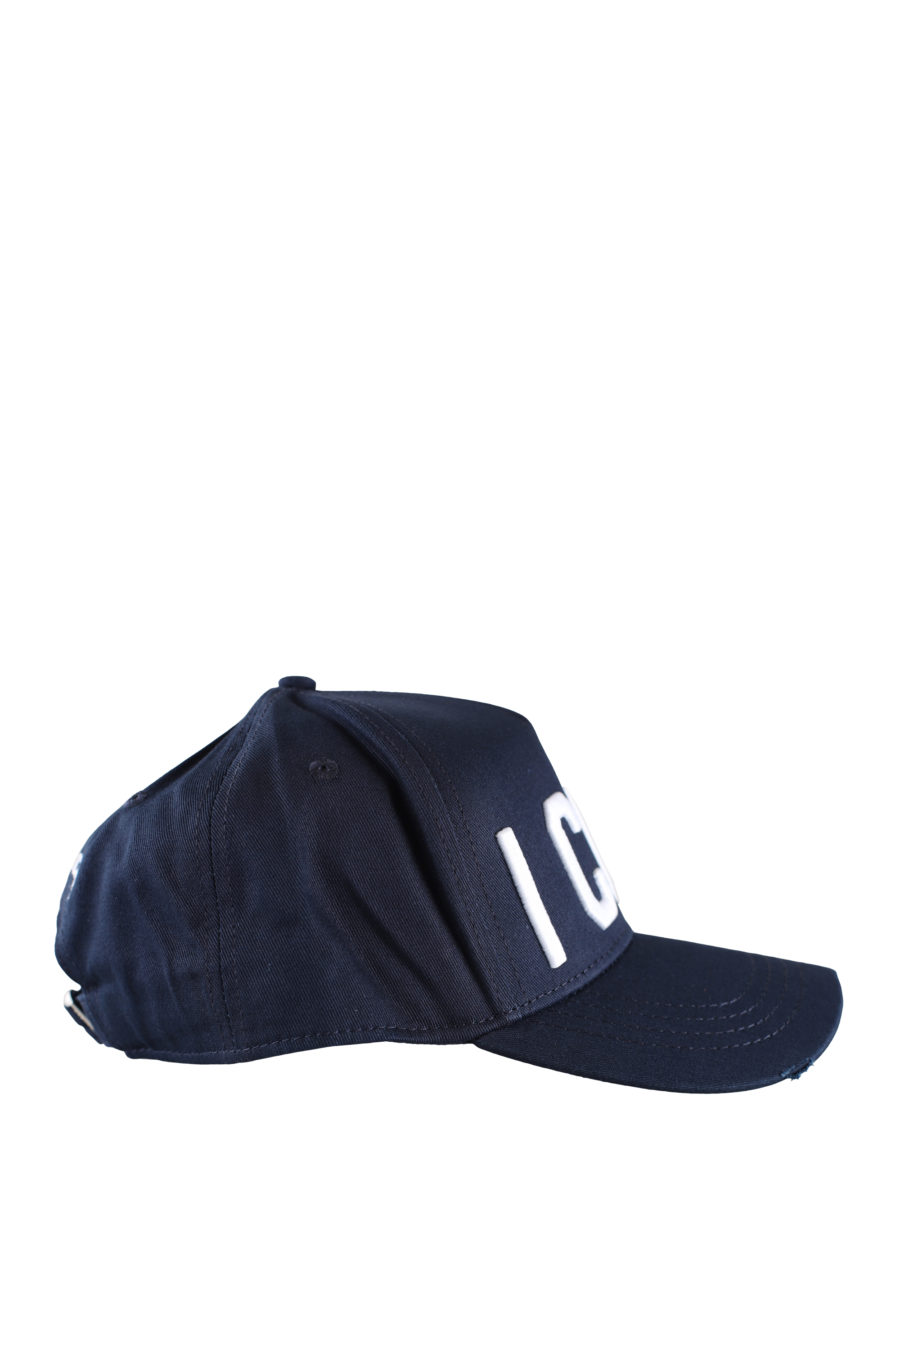 Gorra azul ajustable con logo "icon" blanco - IMG 0003